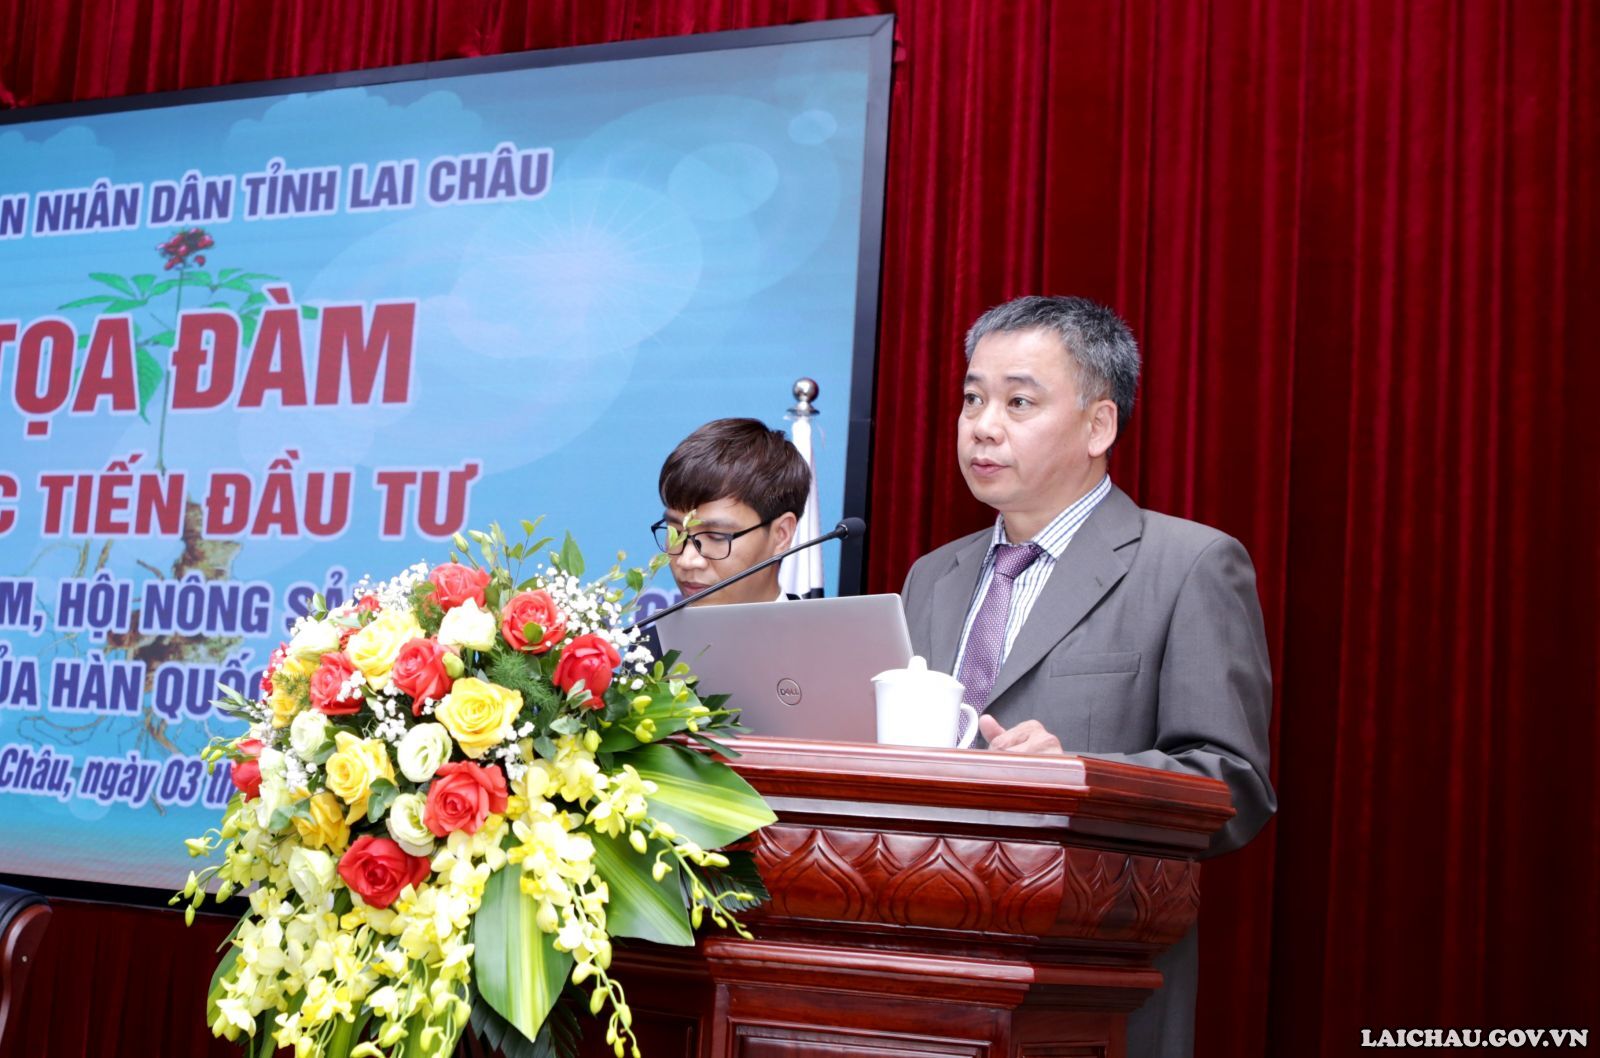 Tọa đàm xúc tiến đầu tư giữa Hiệp hội Sâm, Hội nông sản tỉnh Lai Châu và Hội – Hiệp hội của Hàn Quốc, VKBIA tại Việt Nam - Ảnh minh hoạ 2